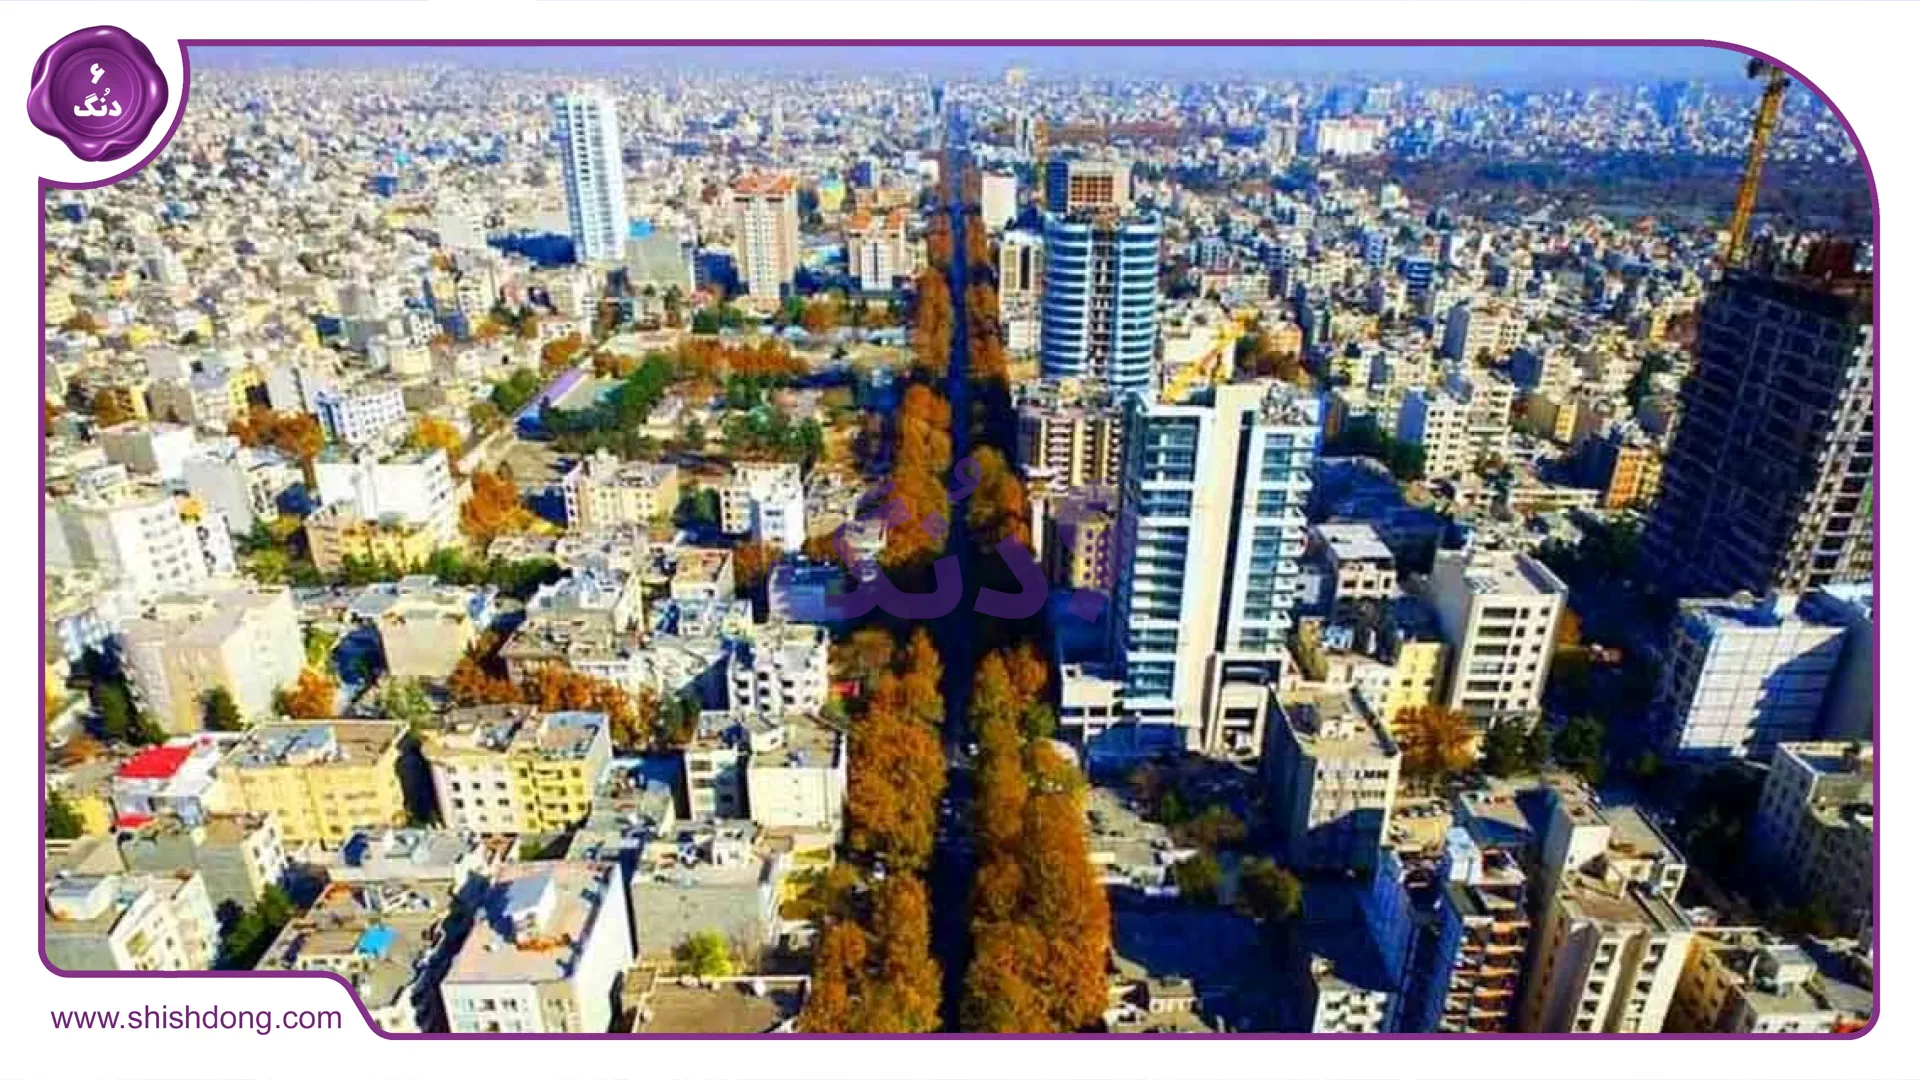 عکسی از نمای بالای شهر مشهد